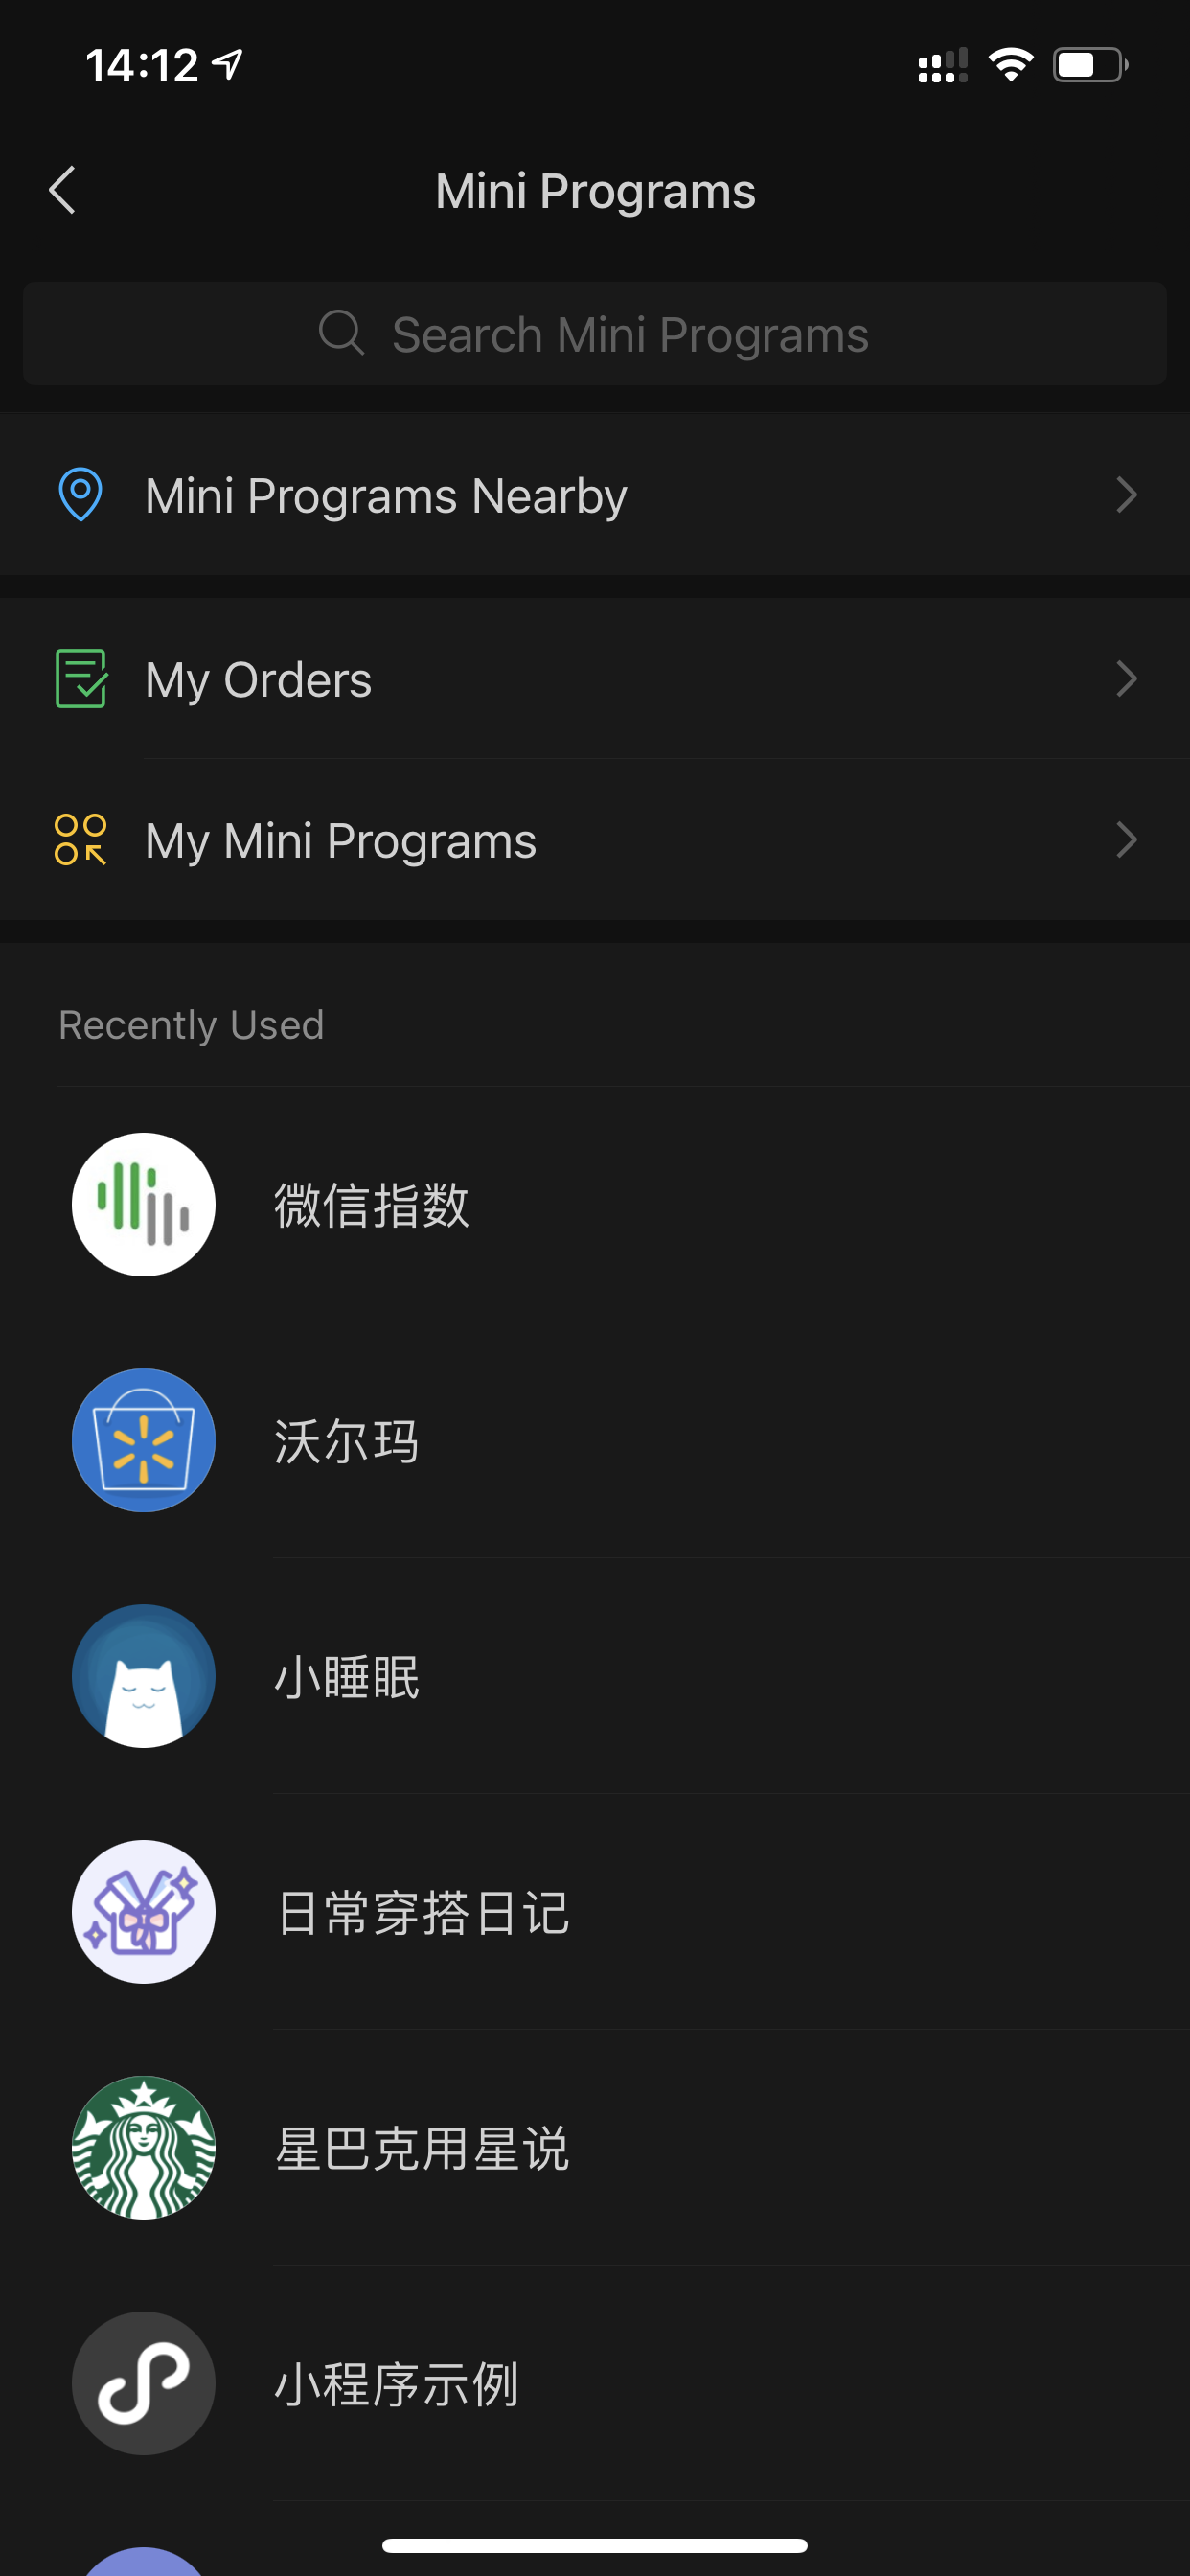 قائمة بالتطبيقات الصغيرة التي تم إطلاقها مؤخرًا في تطبيق WeChat المتميز